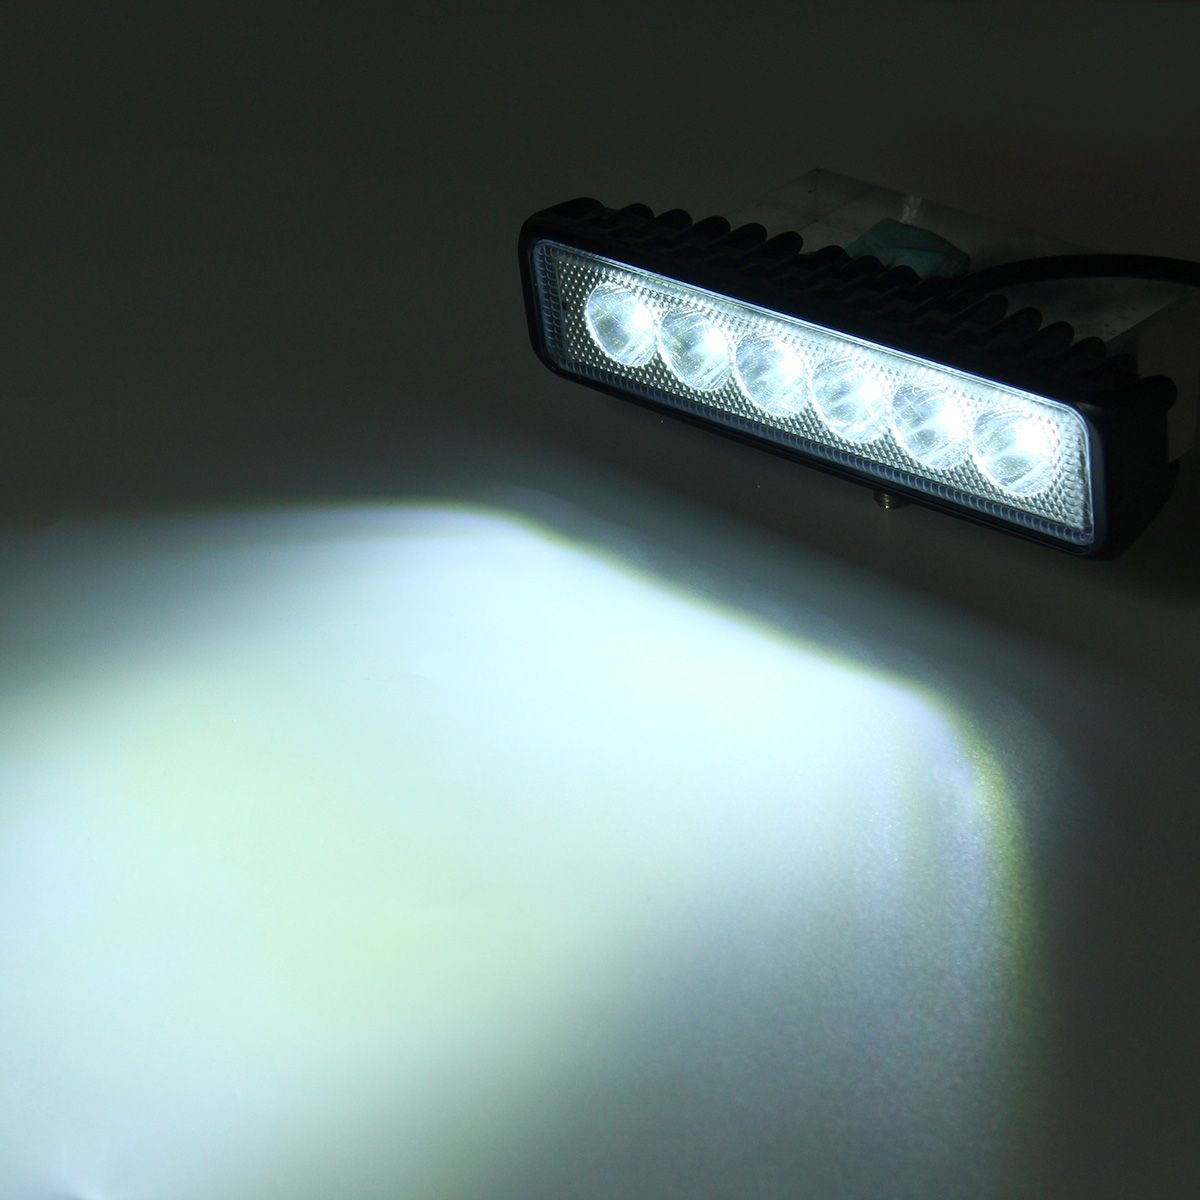 18W-Car-LED-Spot-Work-Light-Fog-Lamp-6000K-White-IP65-Waterproof-For-1224V-Off-road-Truck-ATV-Boat-T-1430619